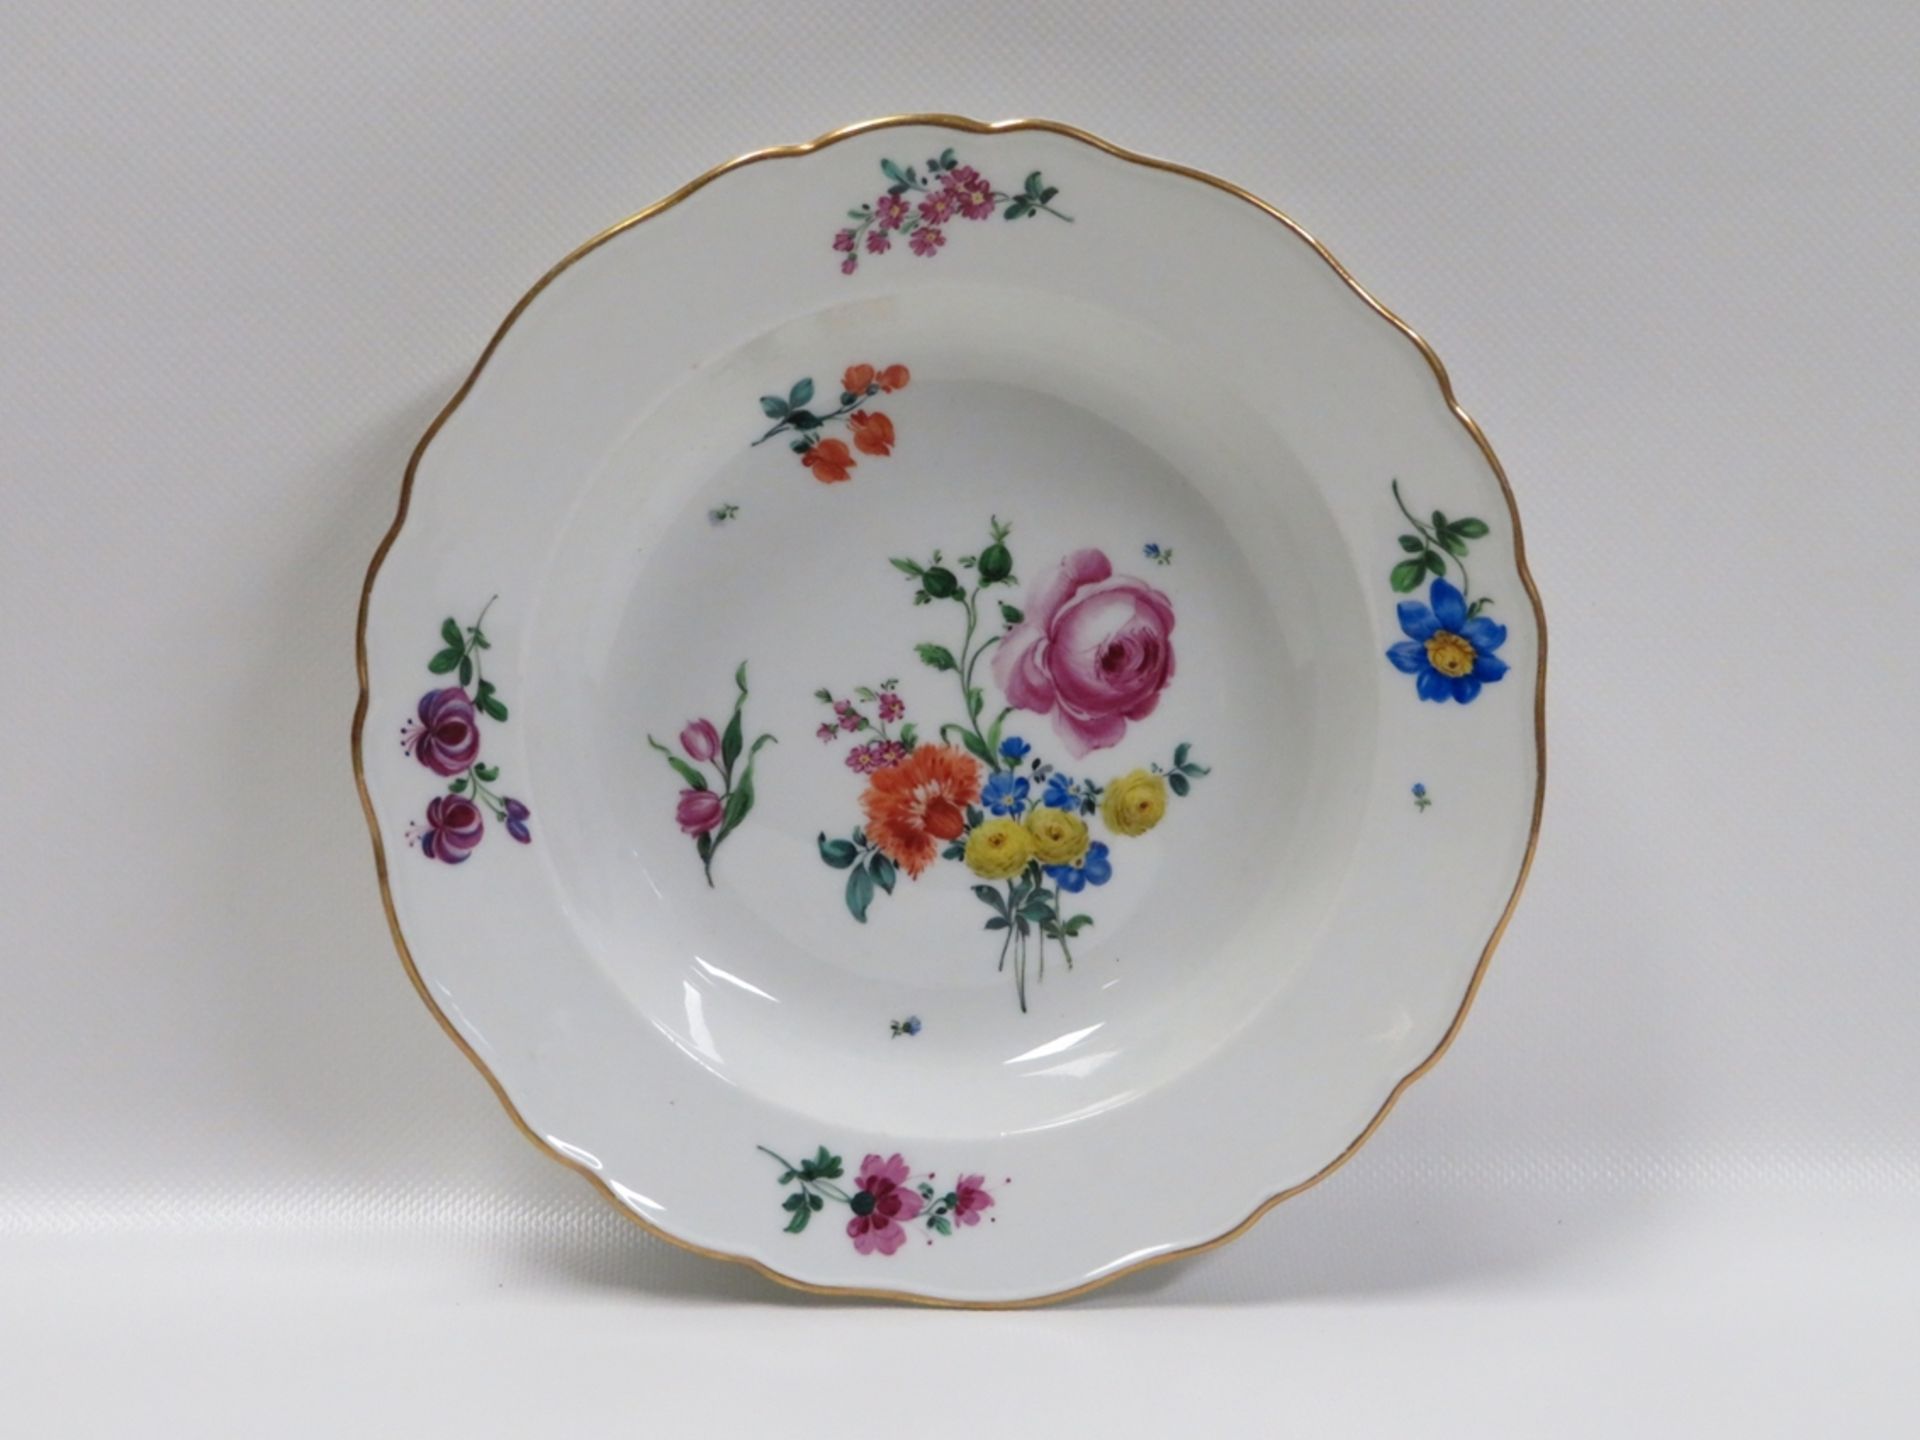 Tiefer Teller, Meissen, 19. Jahrhundert, Weißporzellan mit polychromer Blütenma